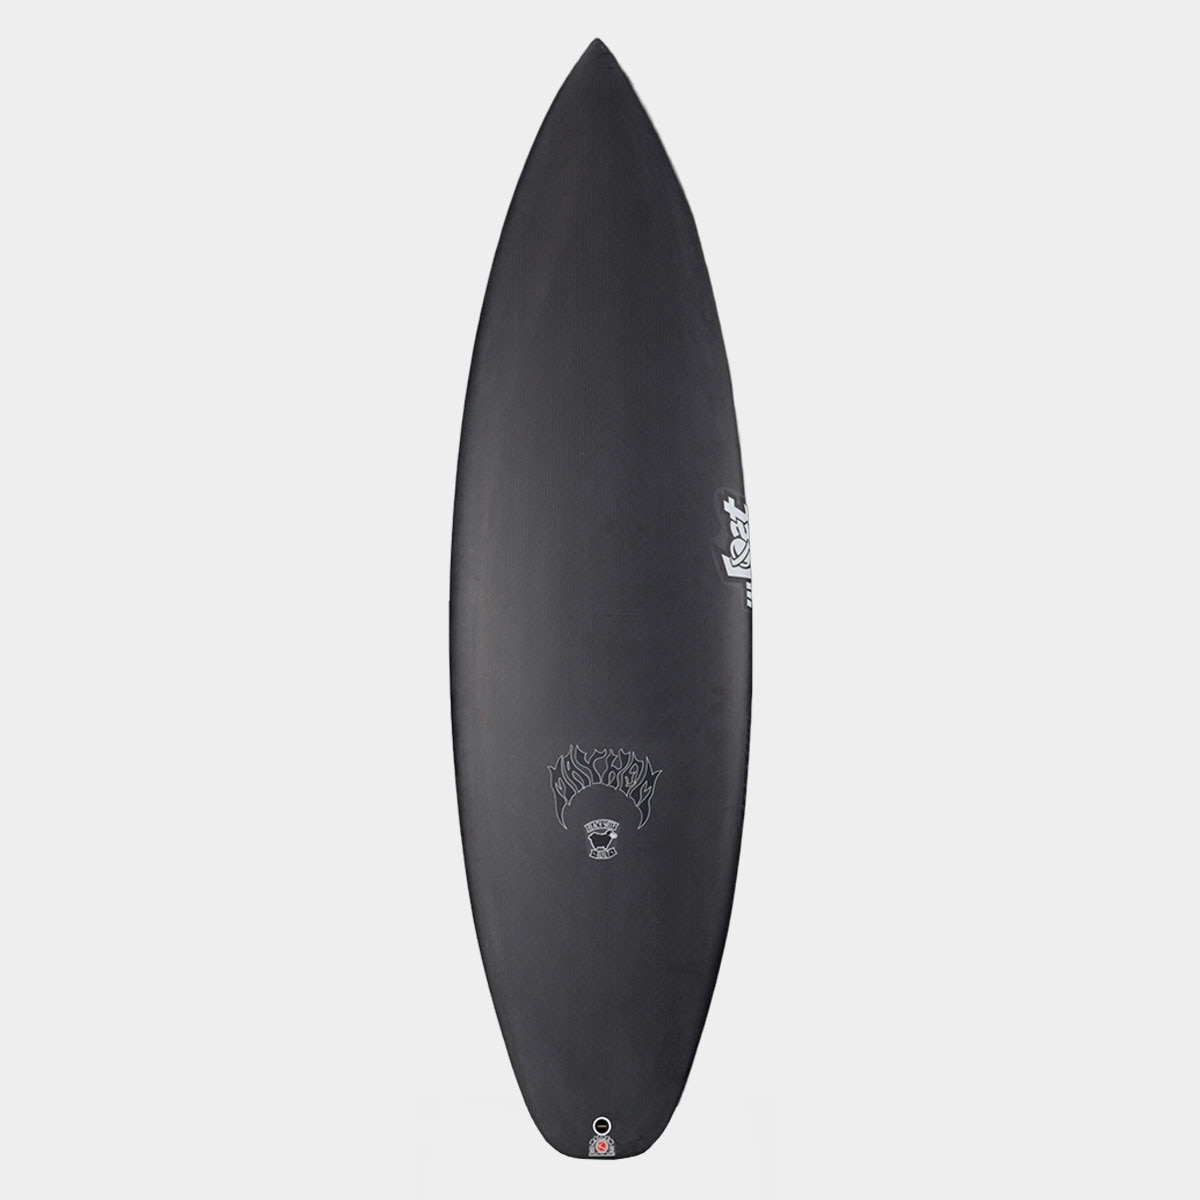 SurfBoardNet / ブランド:LOST SURFBOARDS モデル:3.0 STUB DRIVER 